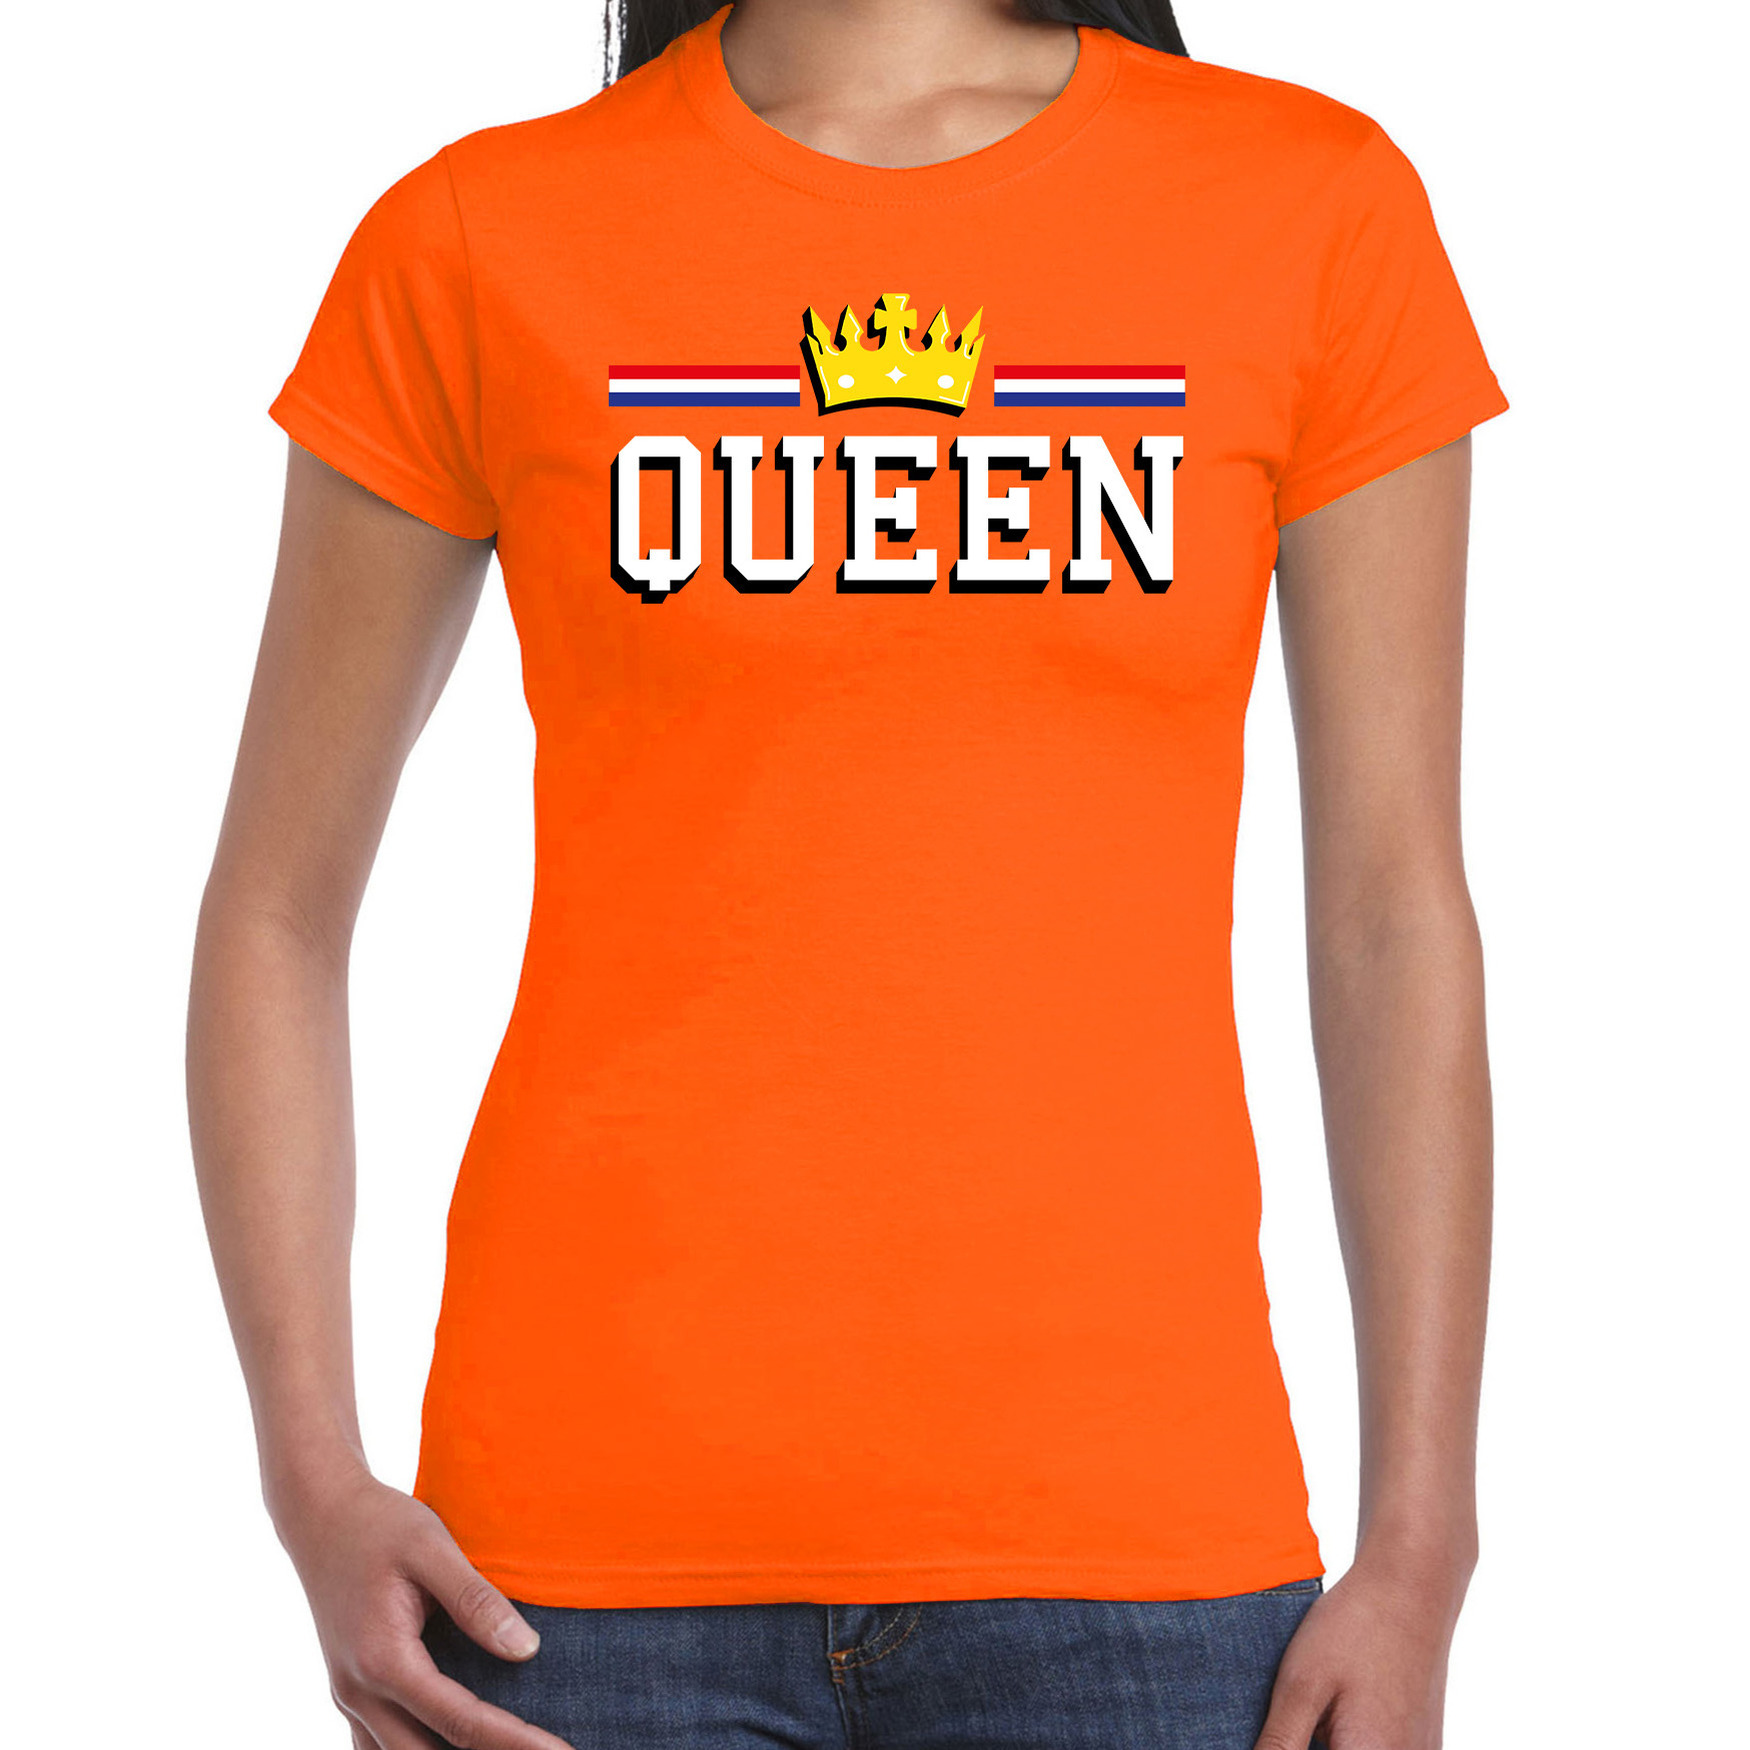 Queen met gouden kroon t-shirt oranje voor dames - Koningsdag shirts